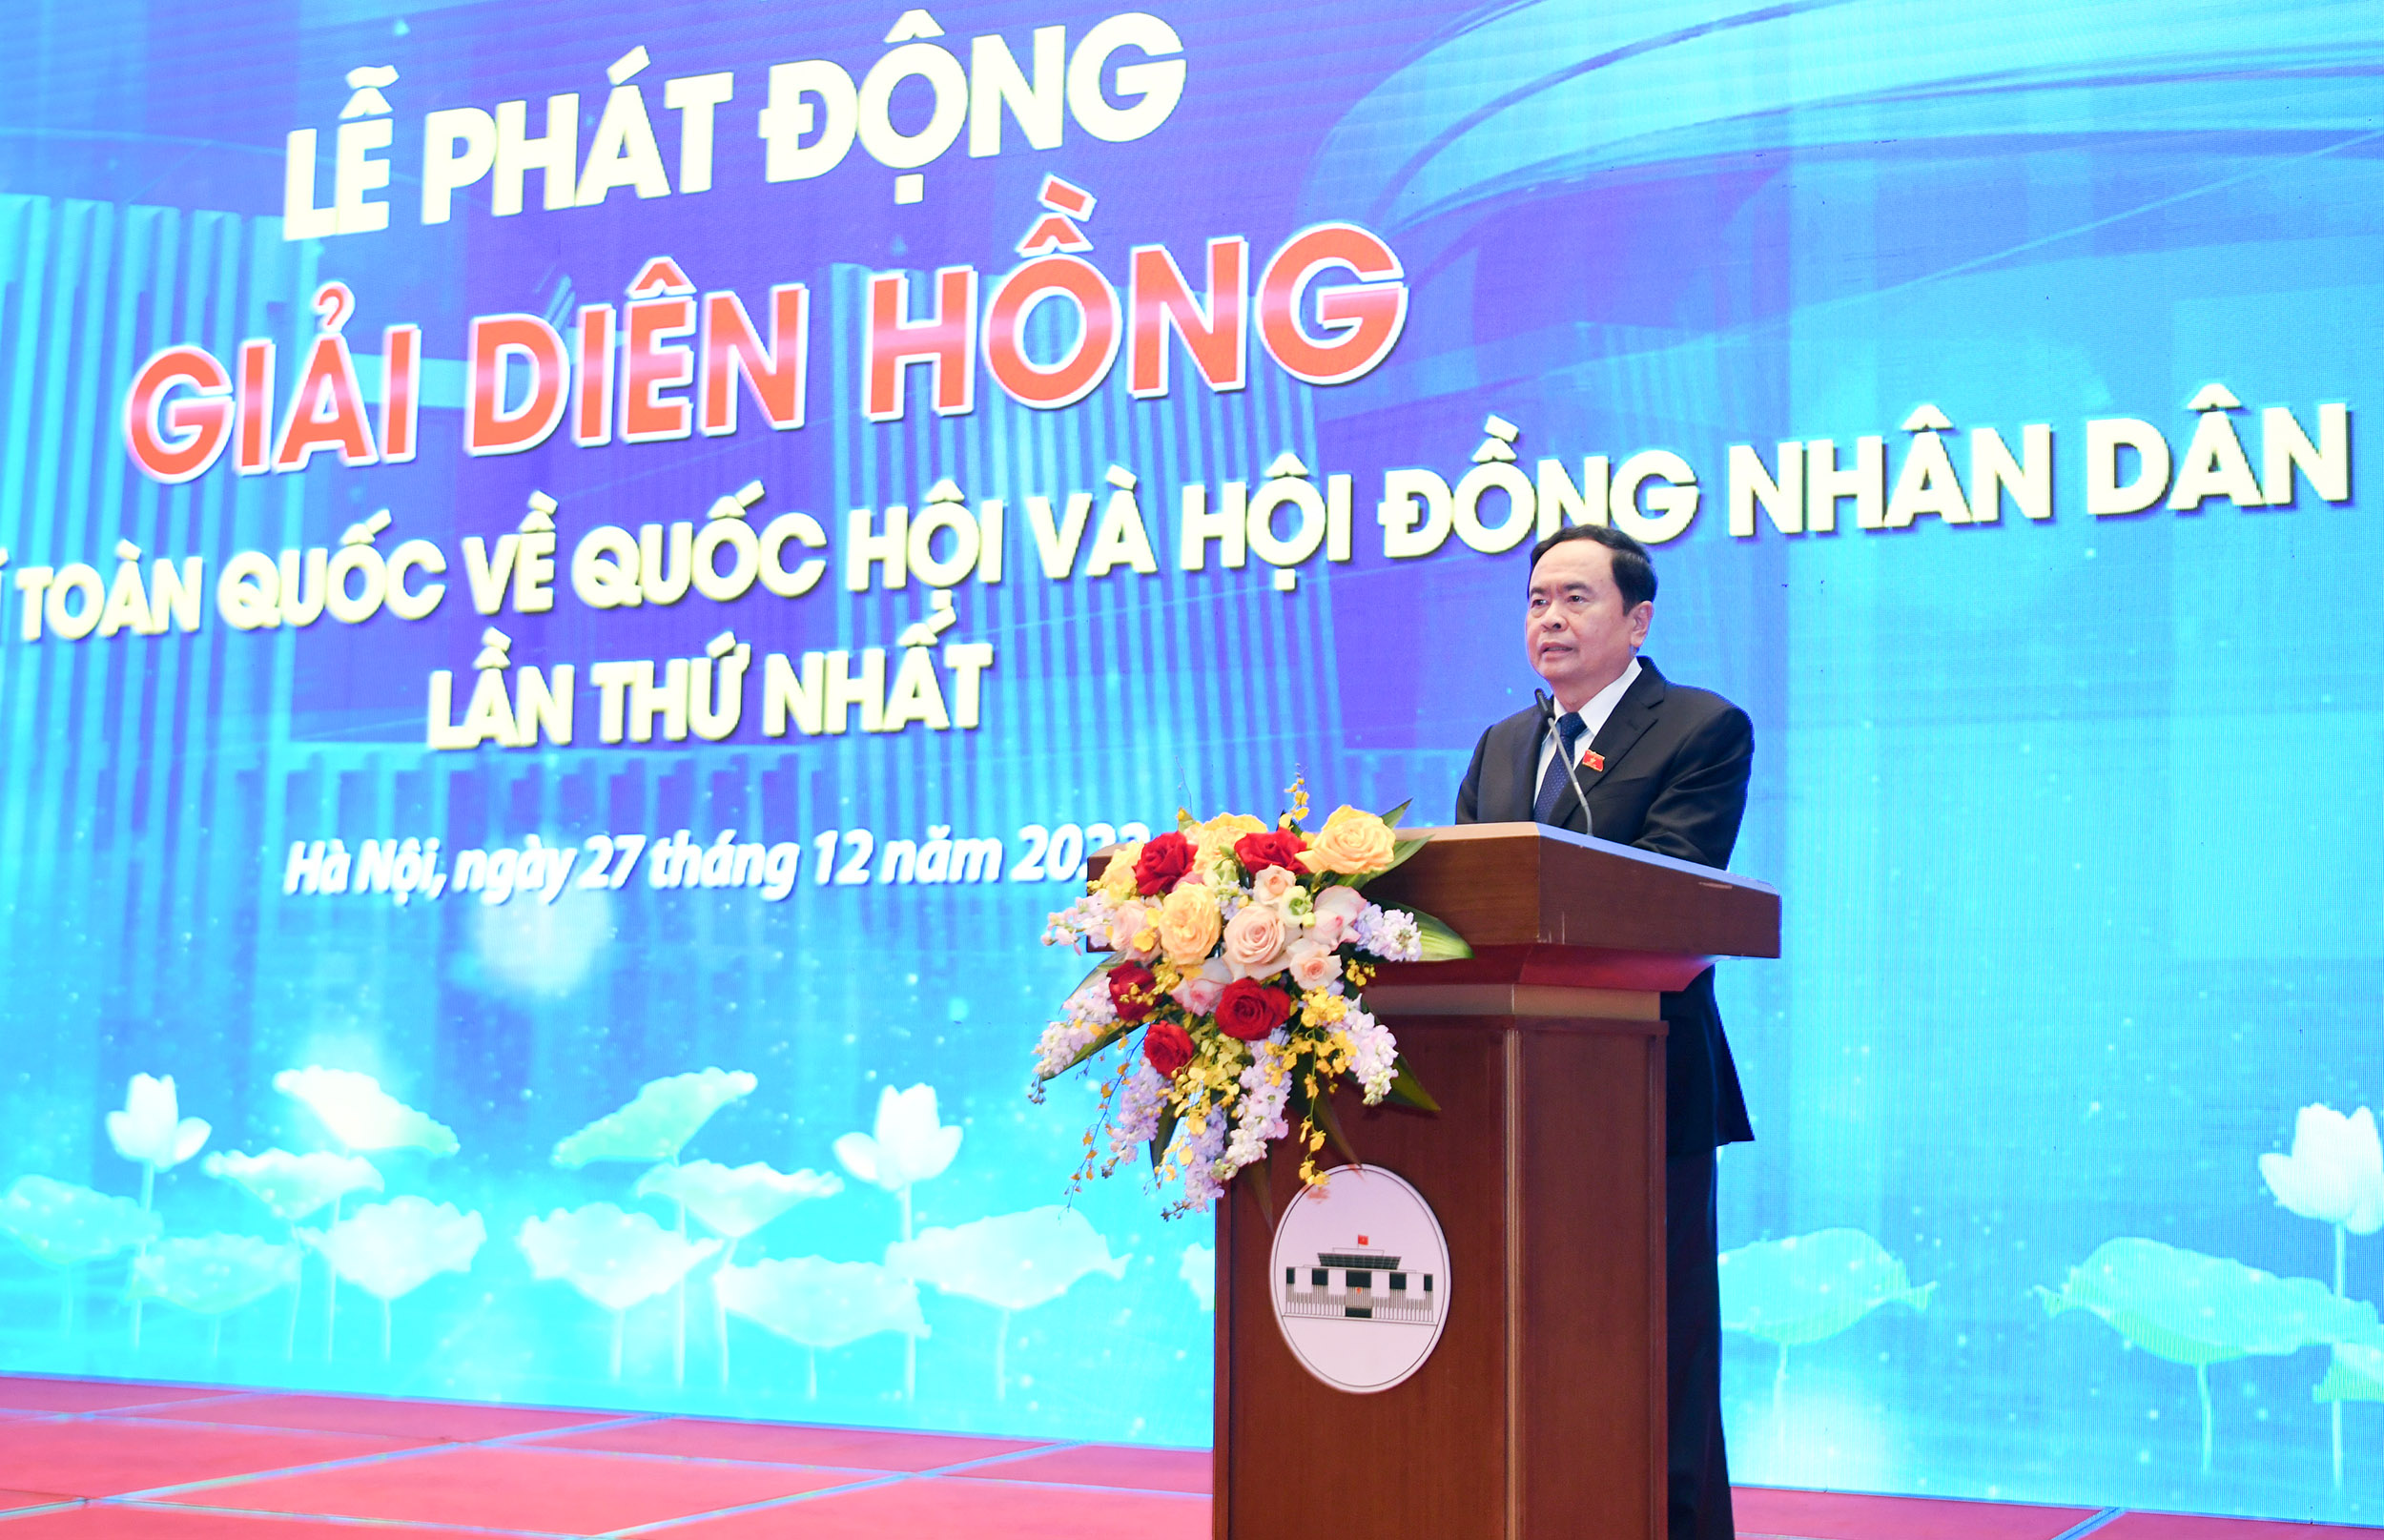 Phó Chủ tịch Thường trực Quốc hội Trần Thanh Mẫn - Trưởng Ban Chỉ đạo Giải Diên Hồng phát biểu.